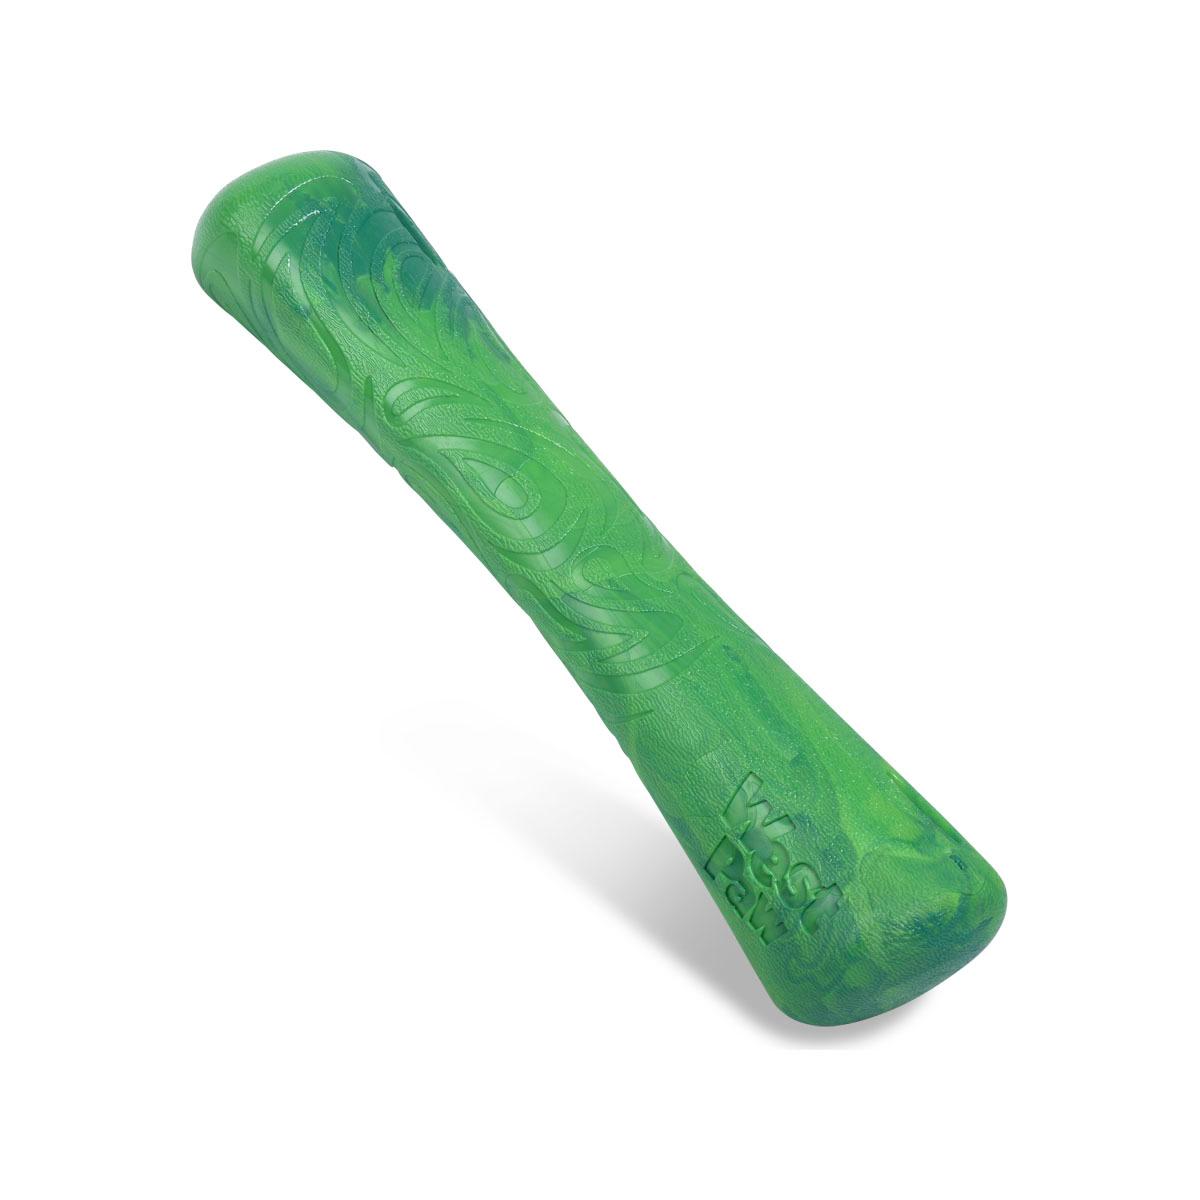 West Paw Seaflex Drifty Dog Toy - Emerald